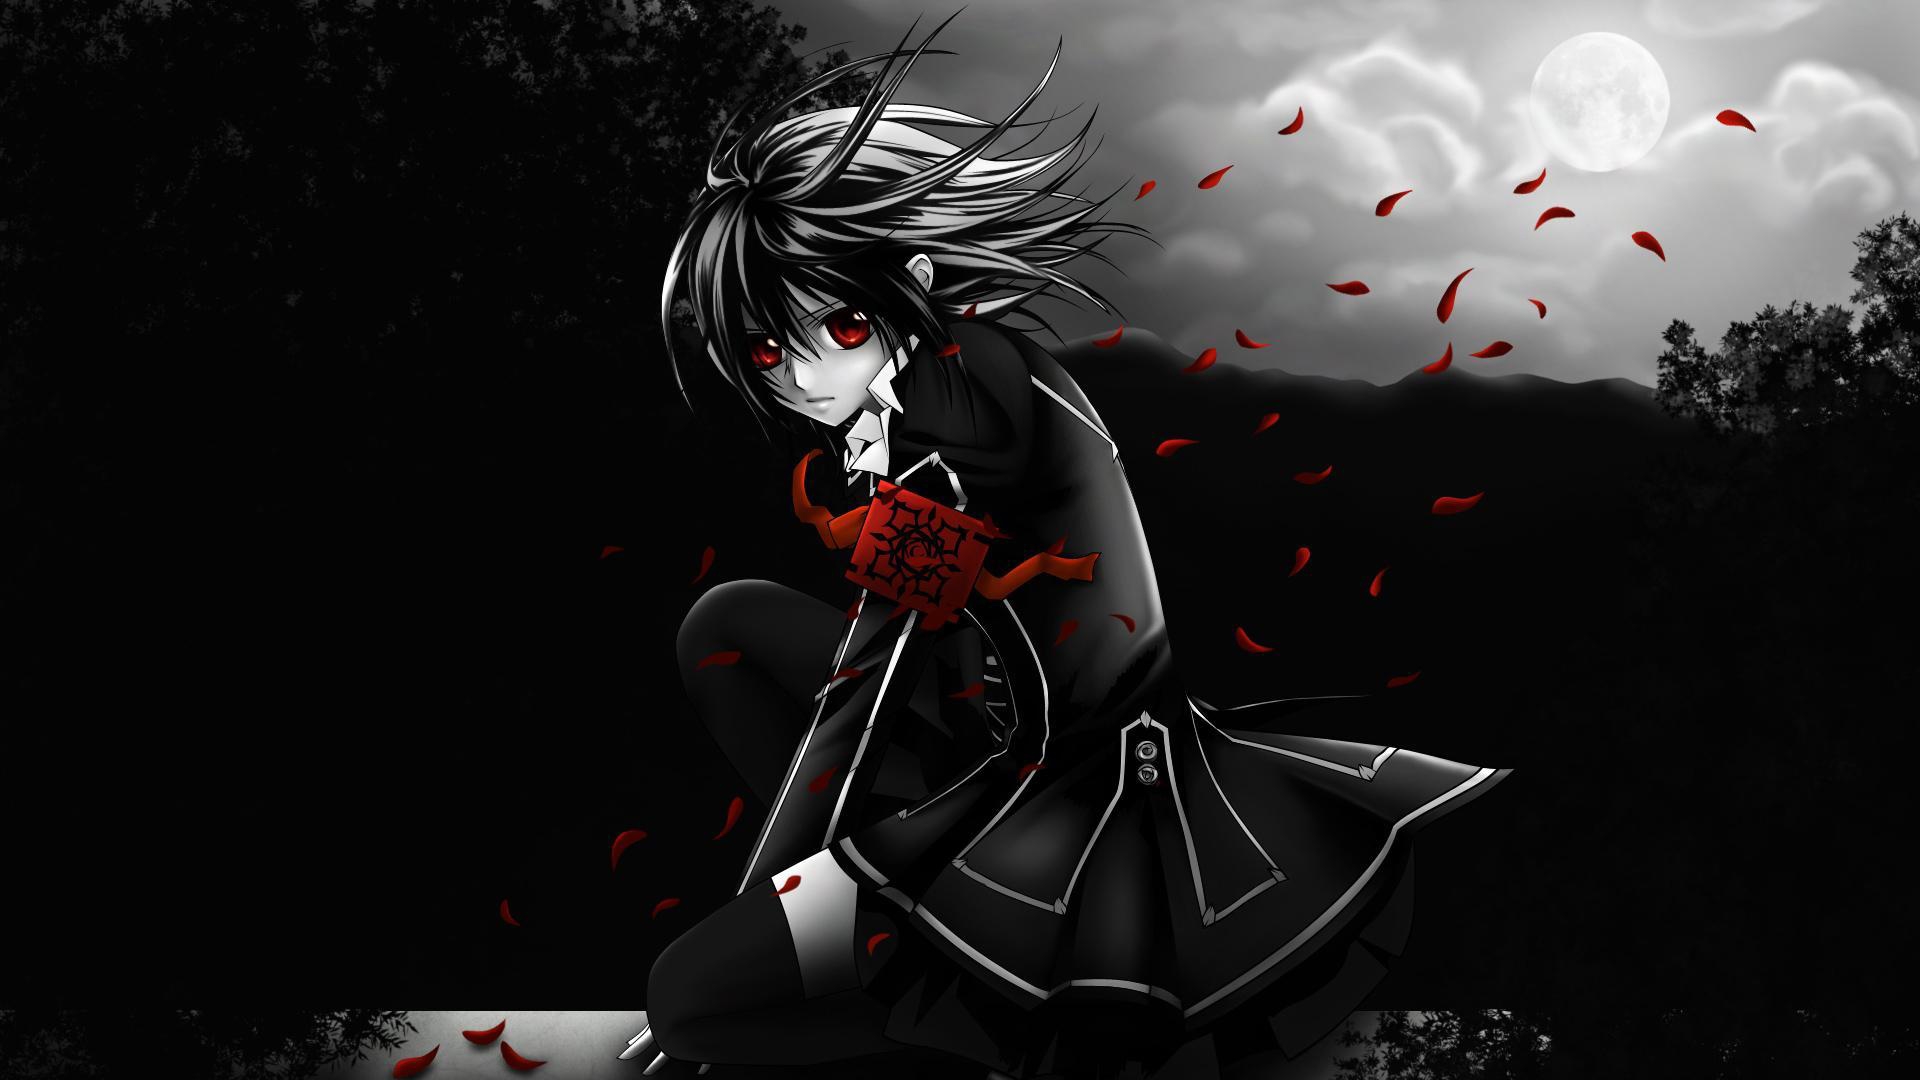 vampire knight wallpaper,anime,cg artwork,black hair,illustration,darkness